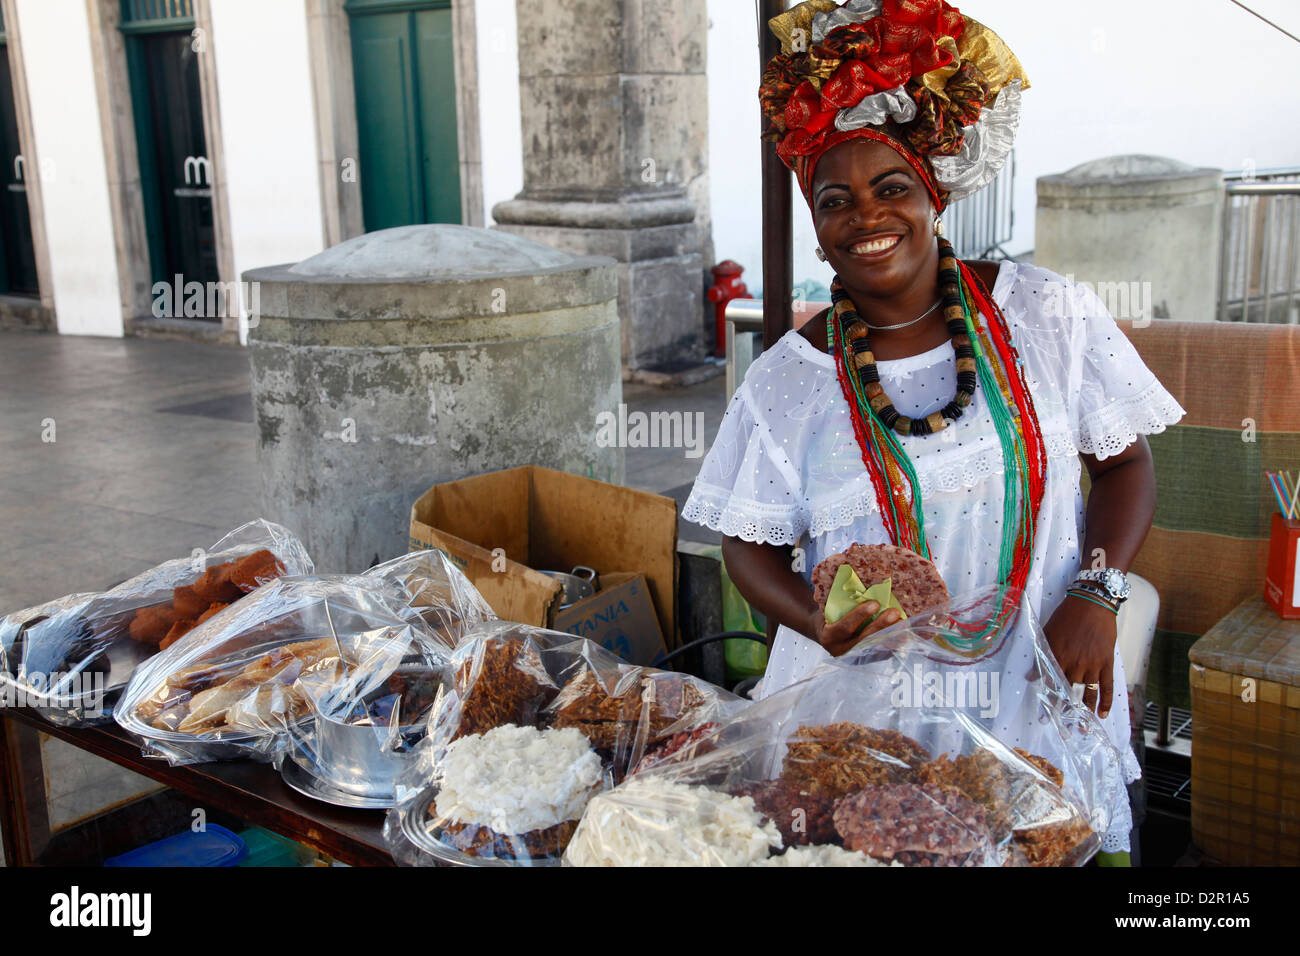 Mujer bahiana en el tradicional vestido blanco vender comida en la calle en el barrio de Pelourinho, Salvador, Bahia, Brasil Foto de stock